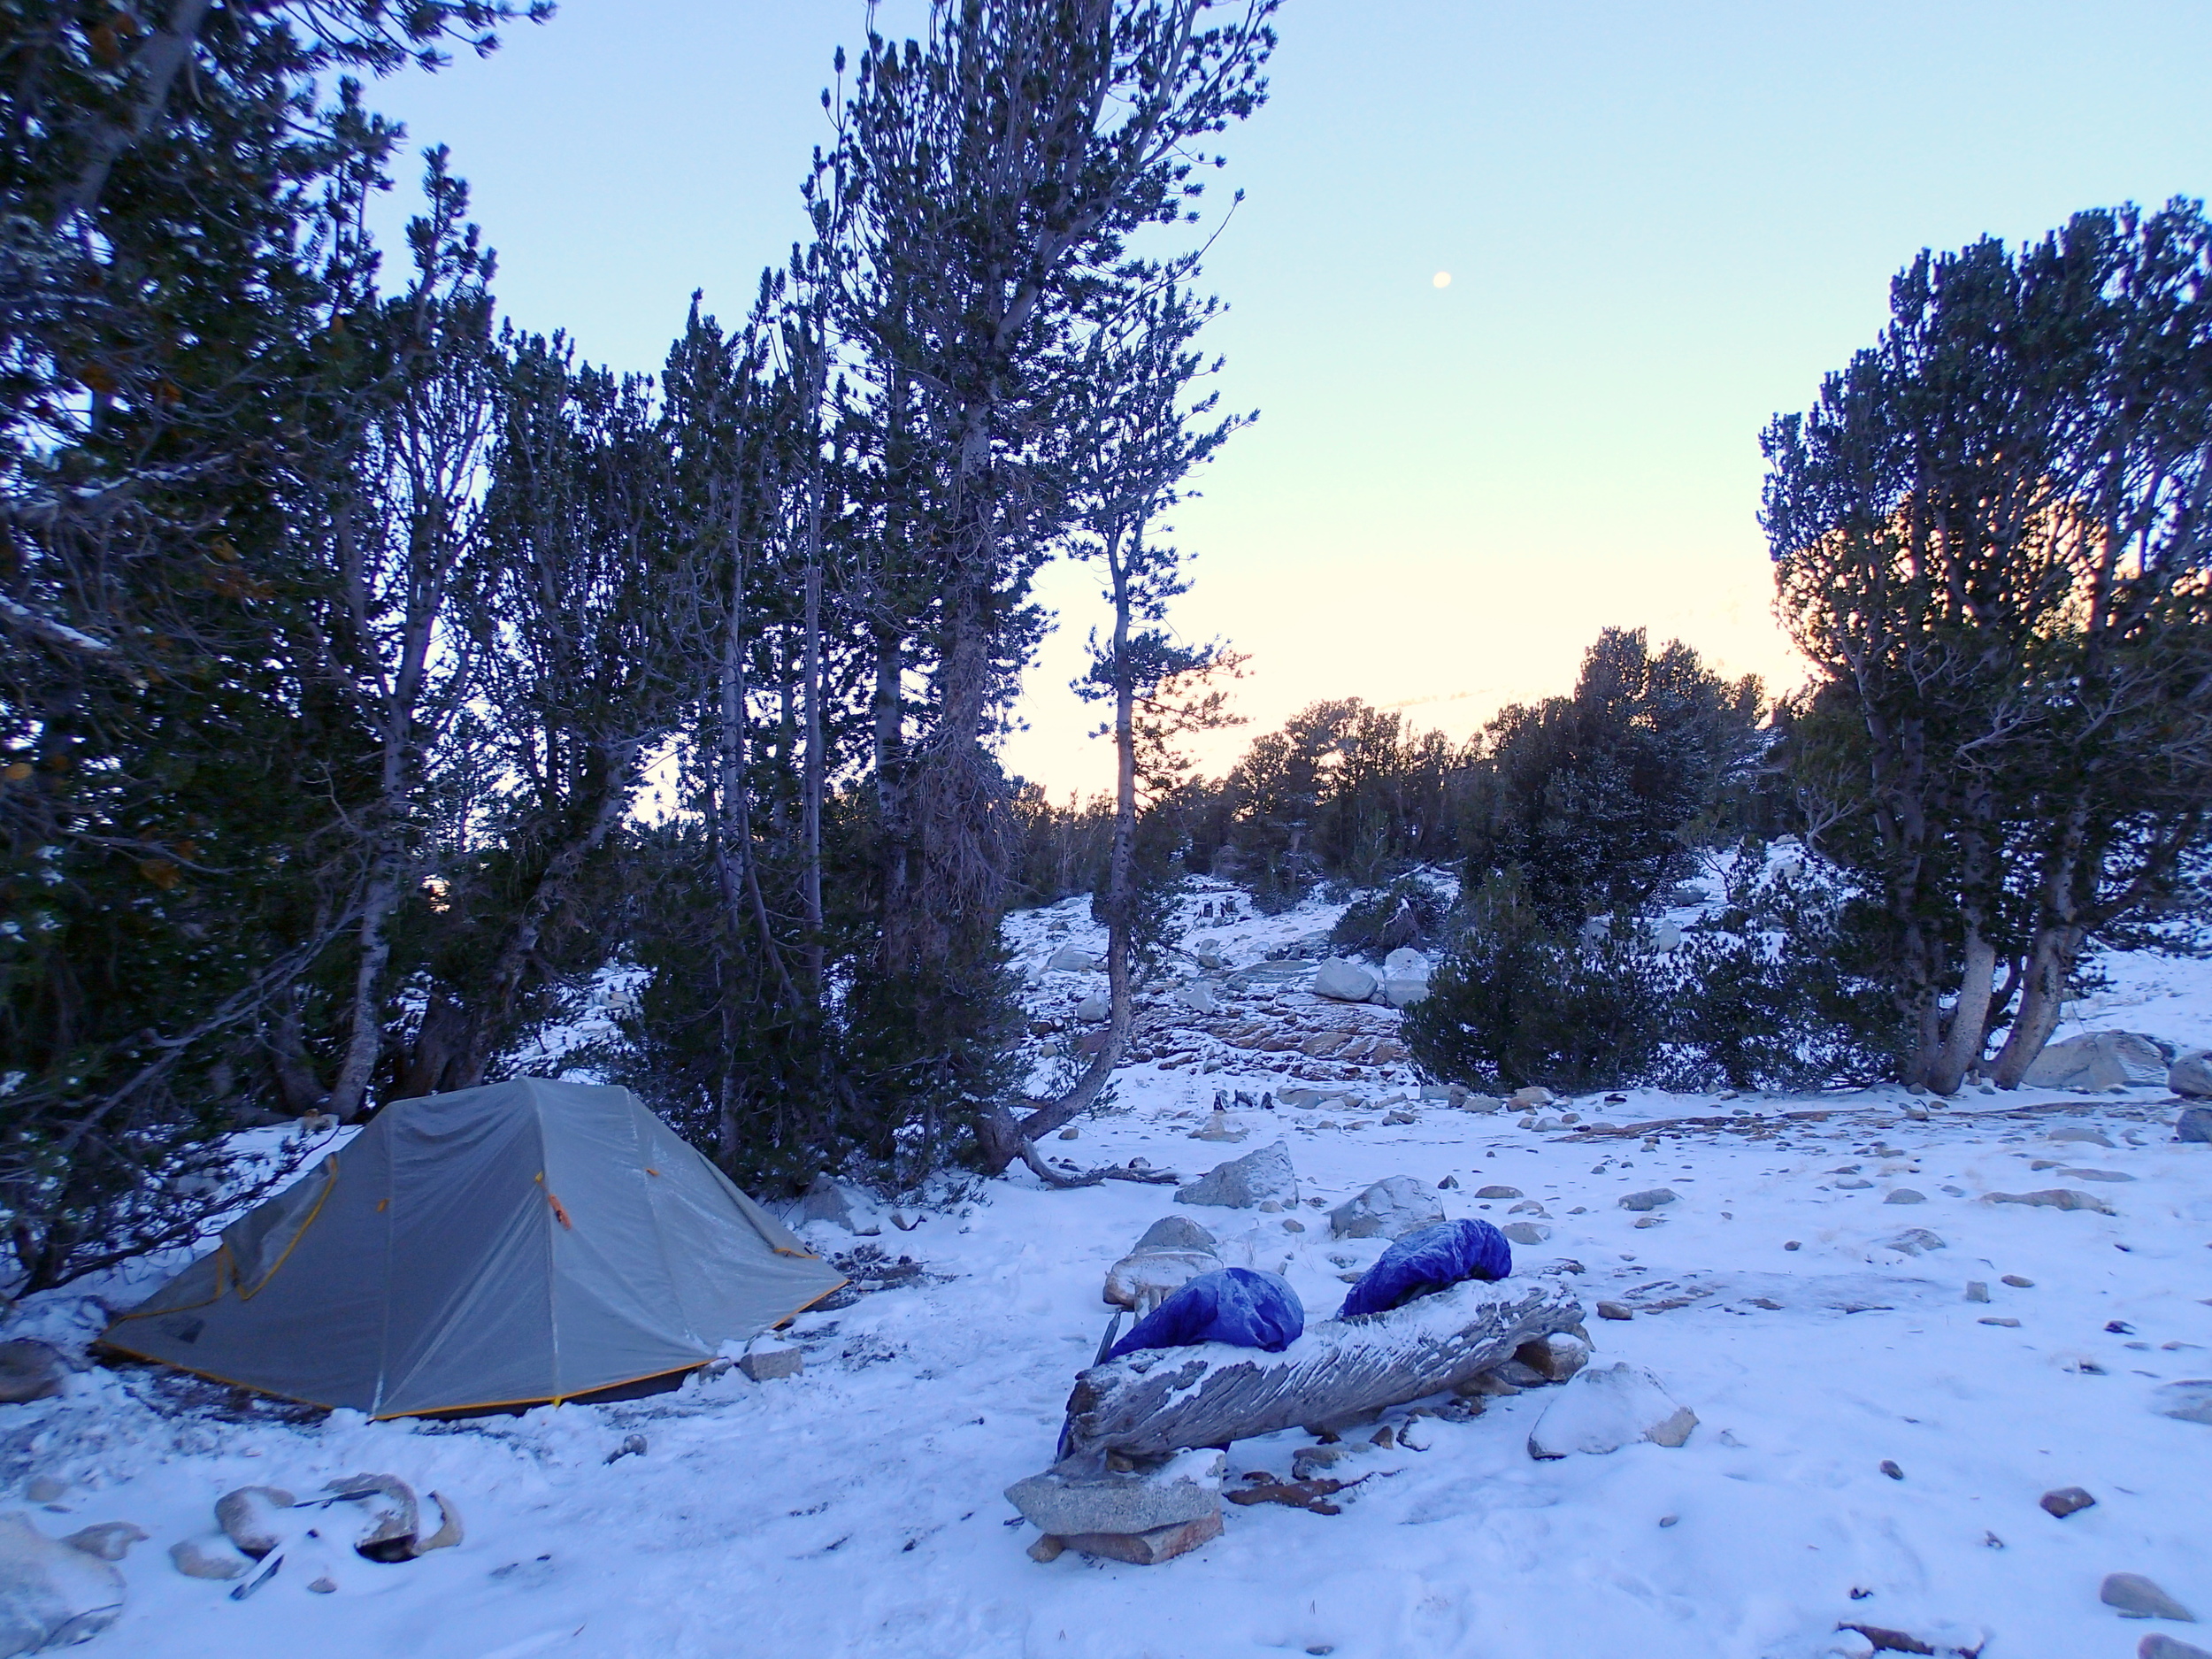 First season snow at camp